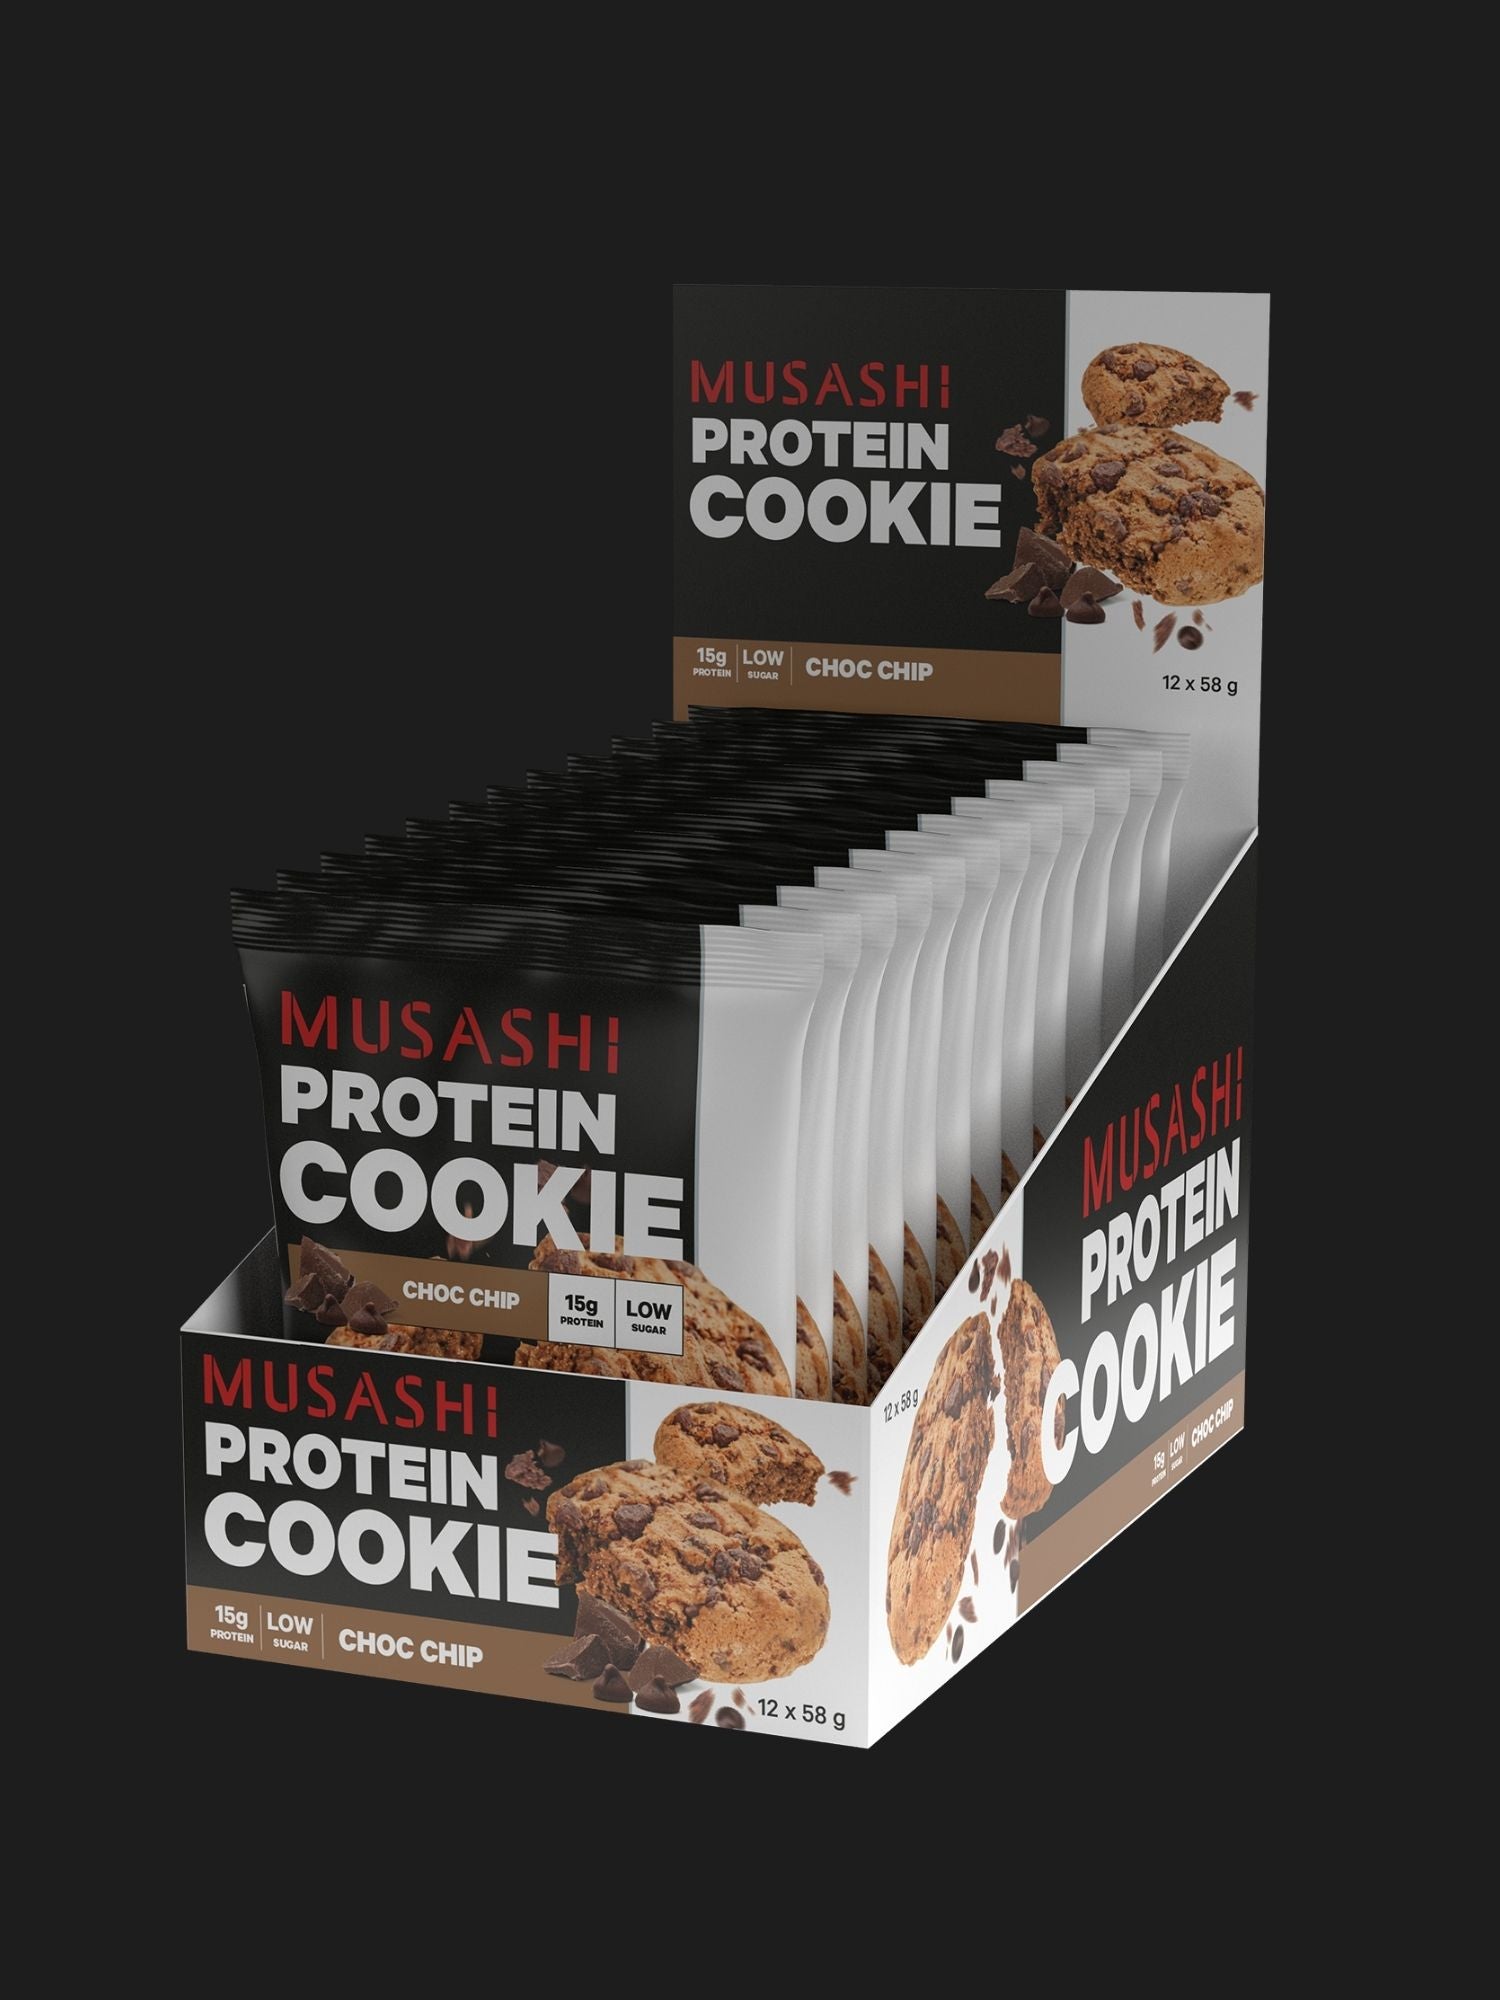 Musashi-Protein-Cookie-Choc-Chip-12x58g